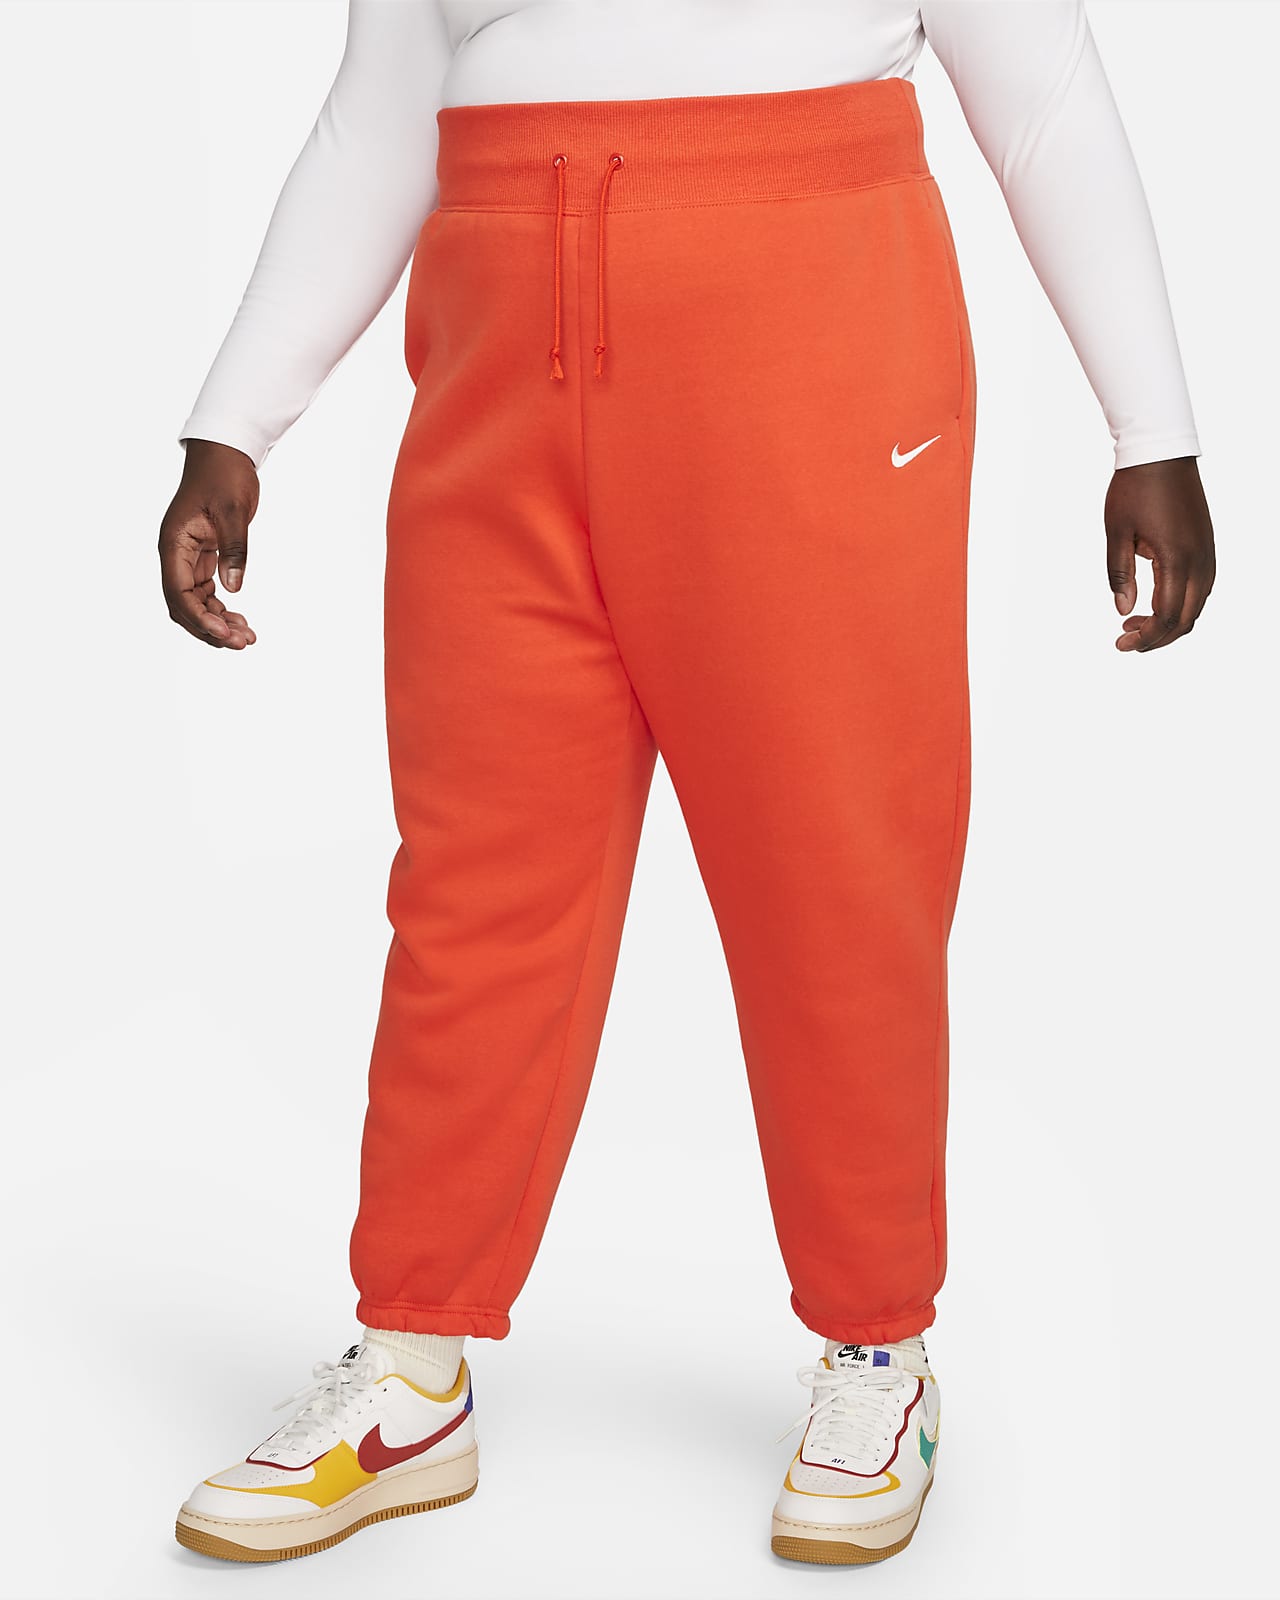 Temeridad Seguro Opiáceo Pants de entrenamiento oversized de cintura alta para mujer (talla grande)  Nike Sportswear Phoenix Fleece. Nike.com